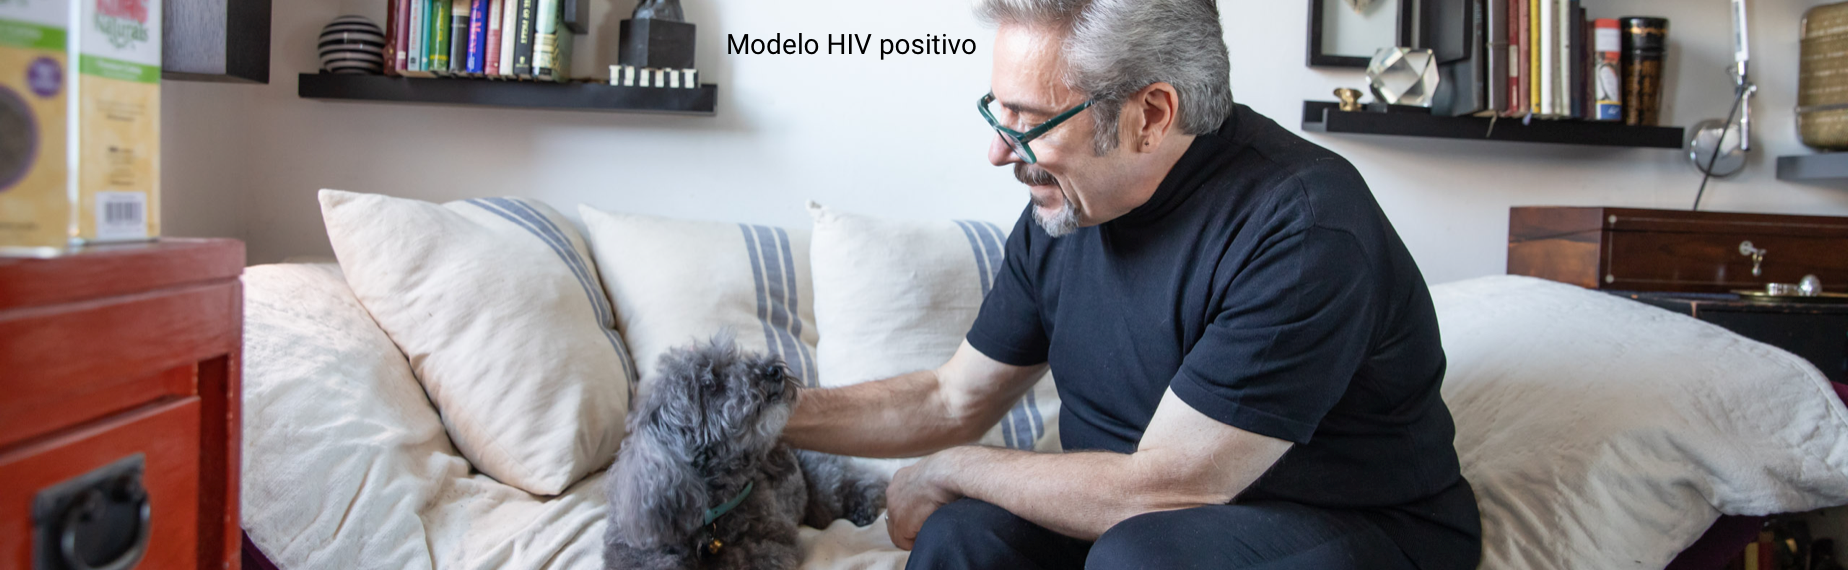 Modelo infectado por el VIH acaricia un perro